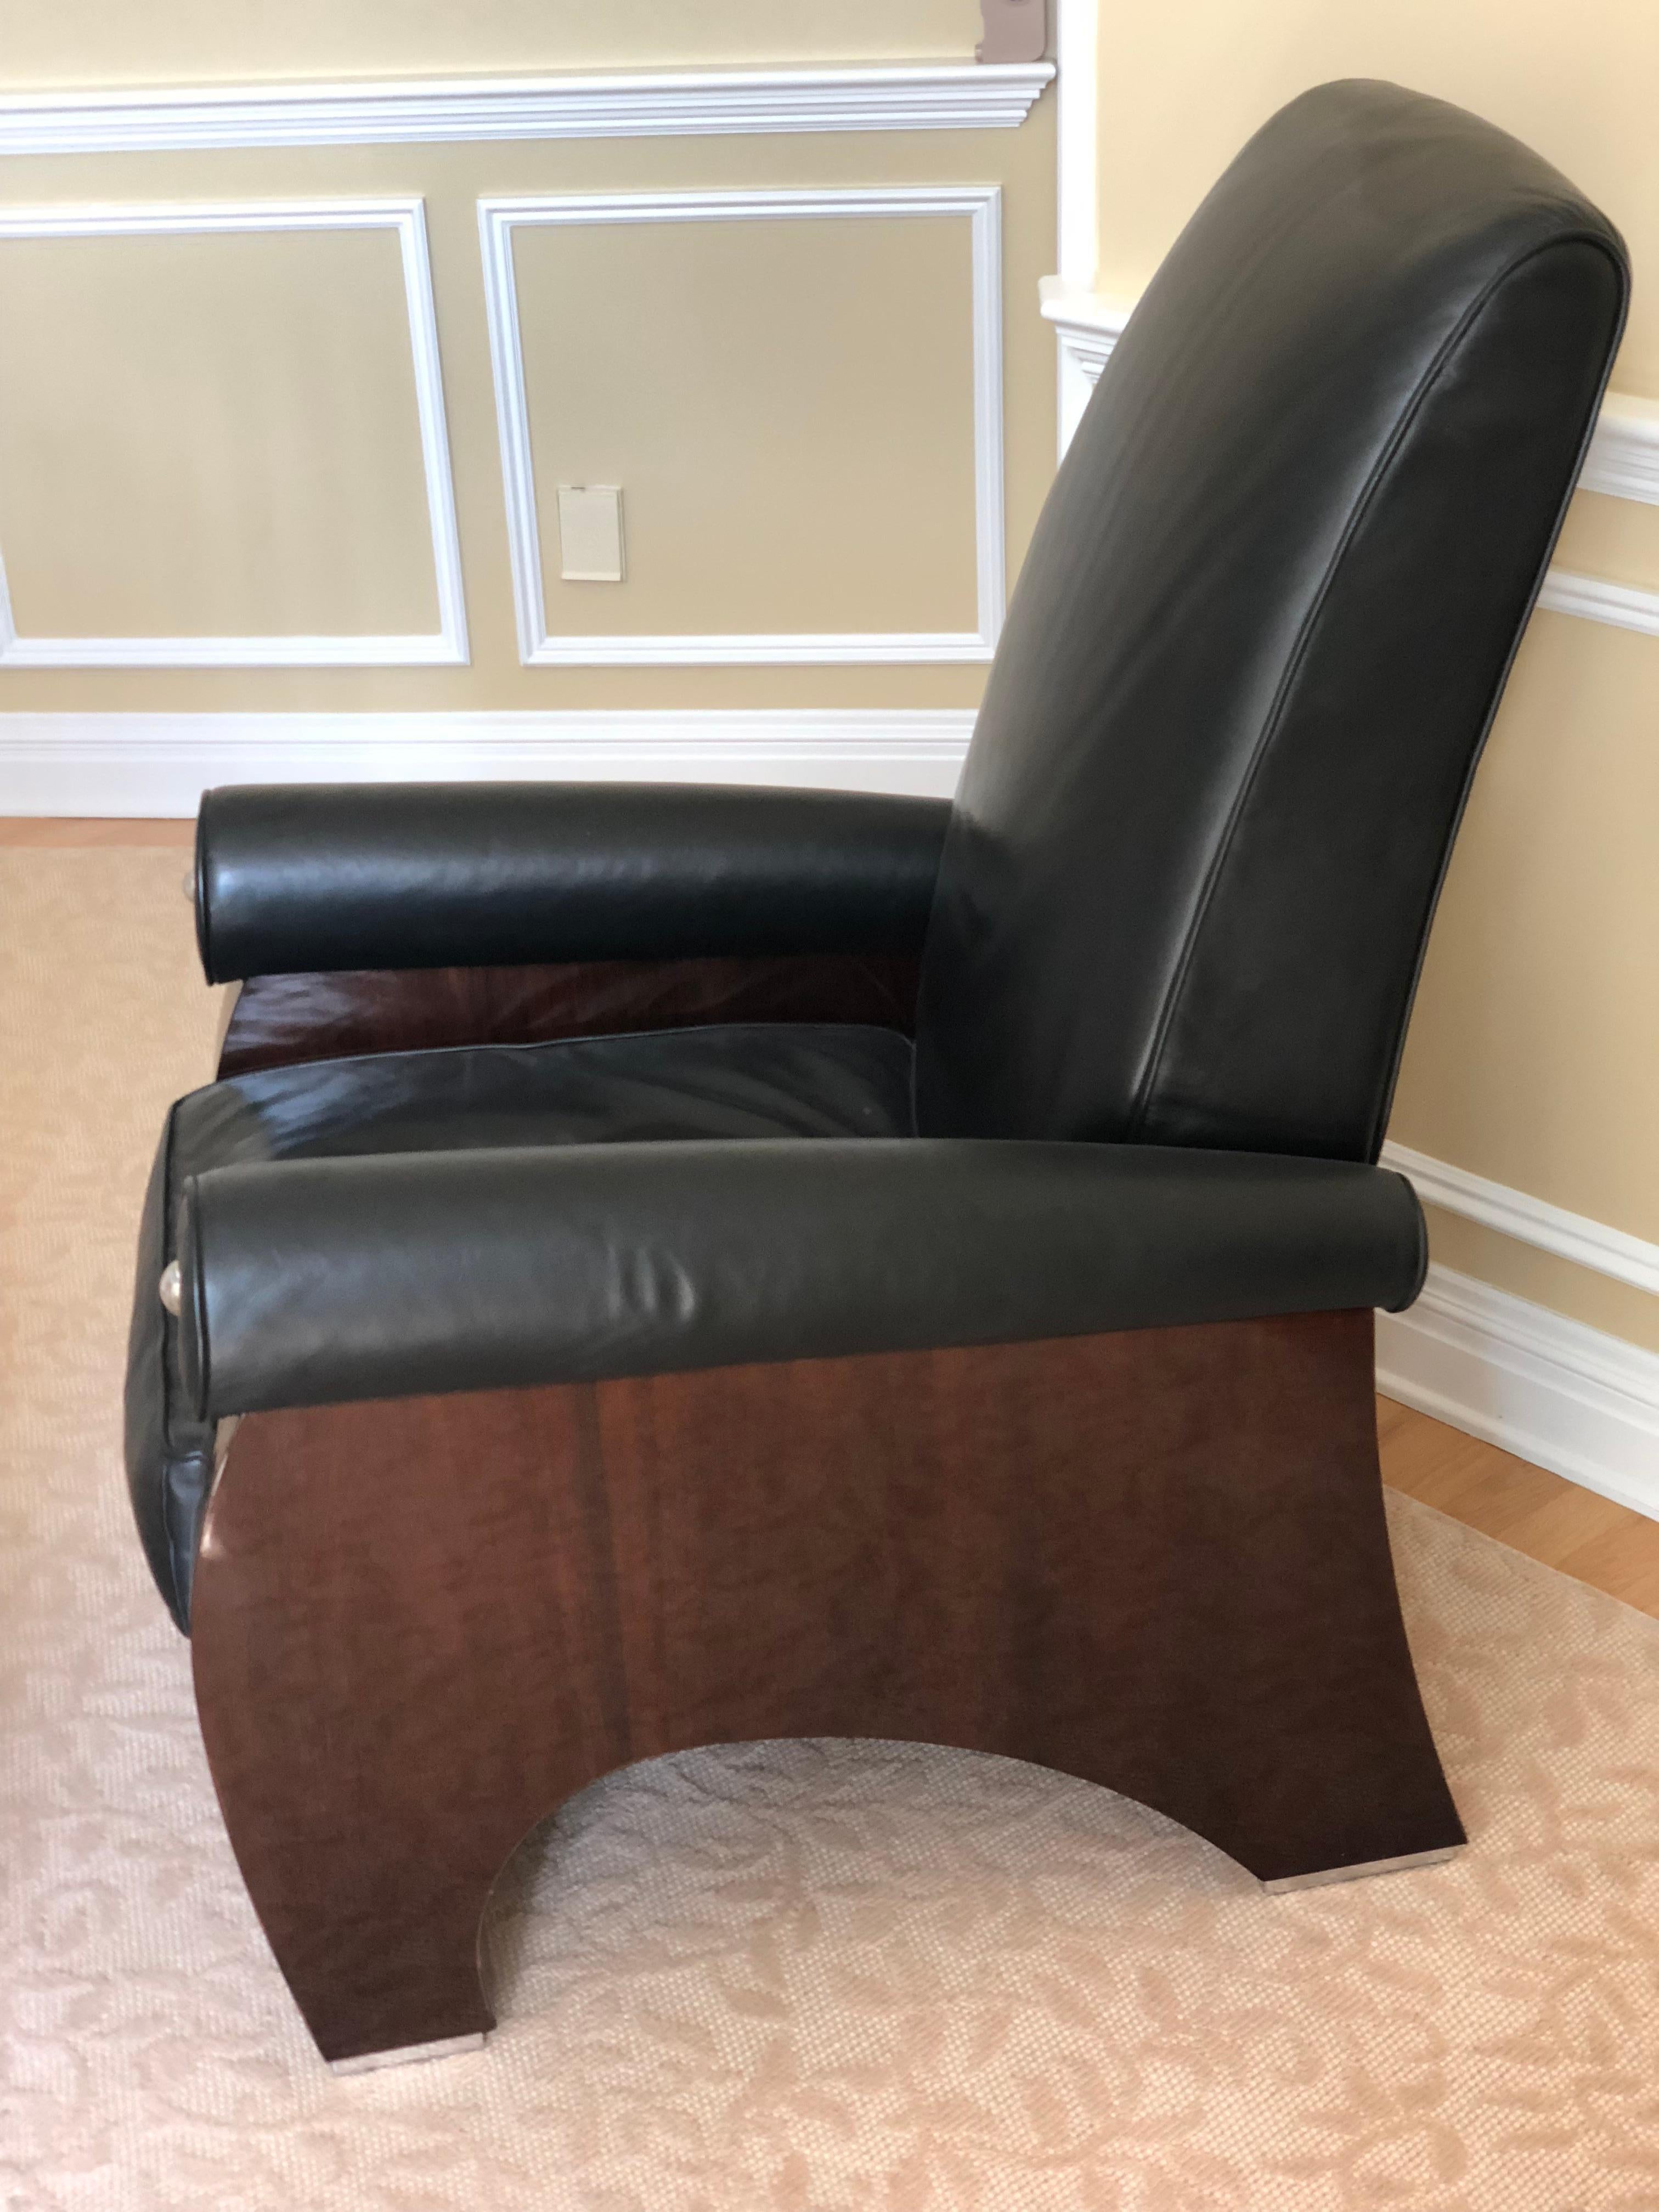 Die Fumo-Sessel wurden von James Rosen für Pace Collection entworfen und 1996 von i4 Mariani hergestellt. Der Fumo hat einen hohen Rücken und übertriebene Proportionen. Die Stühle sind mit weichem schwarzem Leder gepolstert. Der Sockel aus